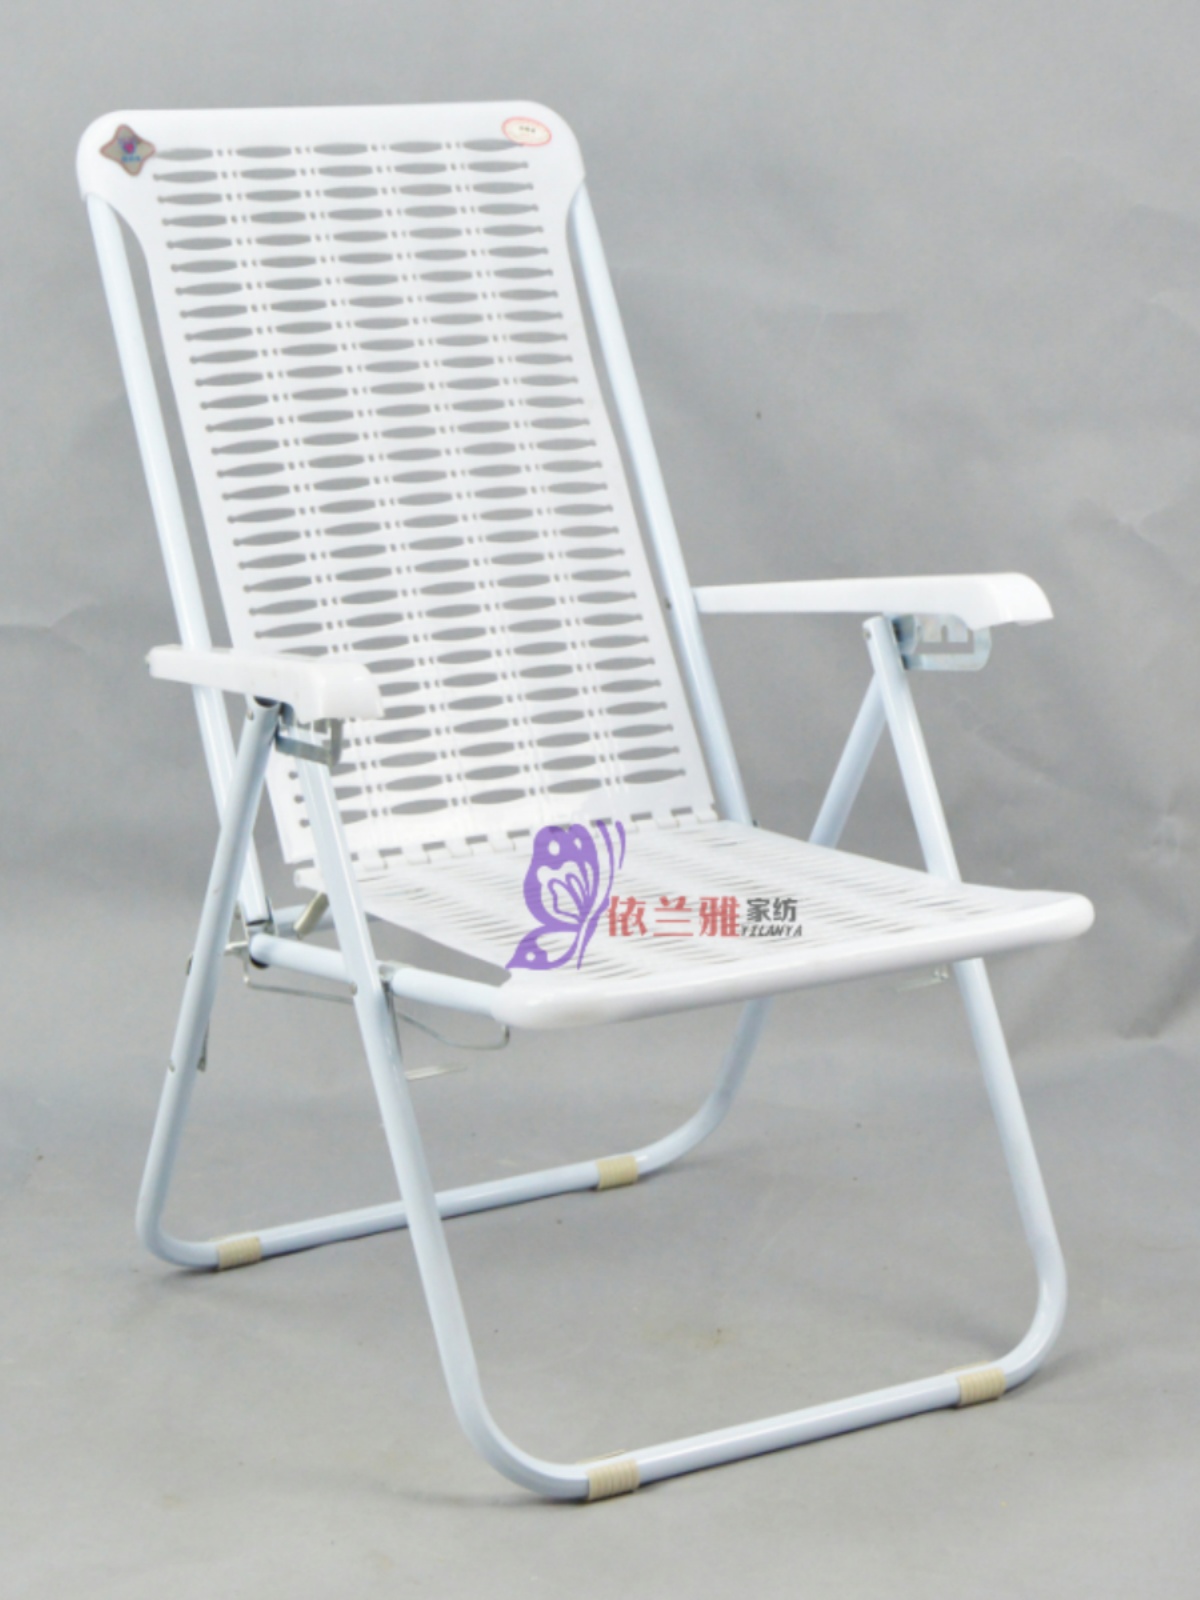 塑料折叠躺椅沙滩椅蓝白胶懒人睡椅夏凉椅午休陪护午休椅广东包邮